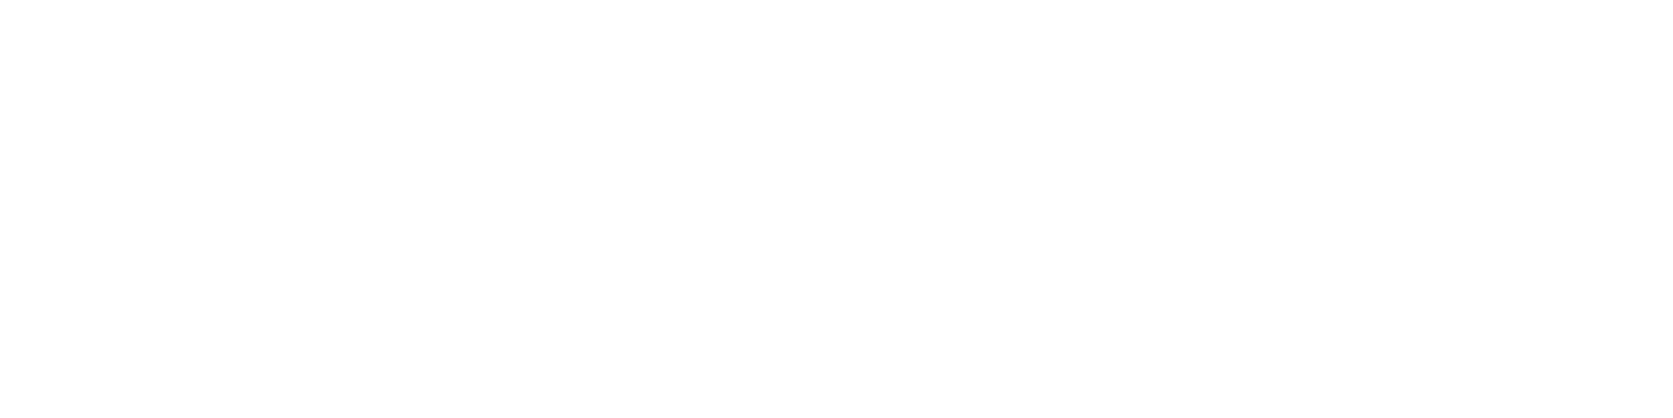 AstraZeneca logo in white